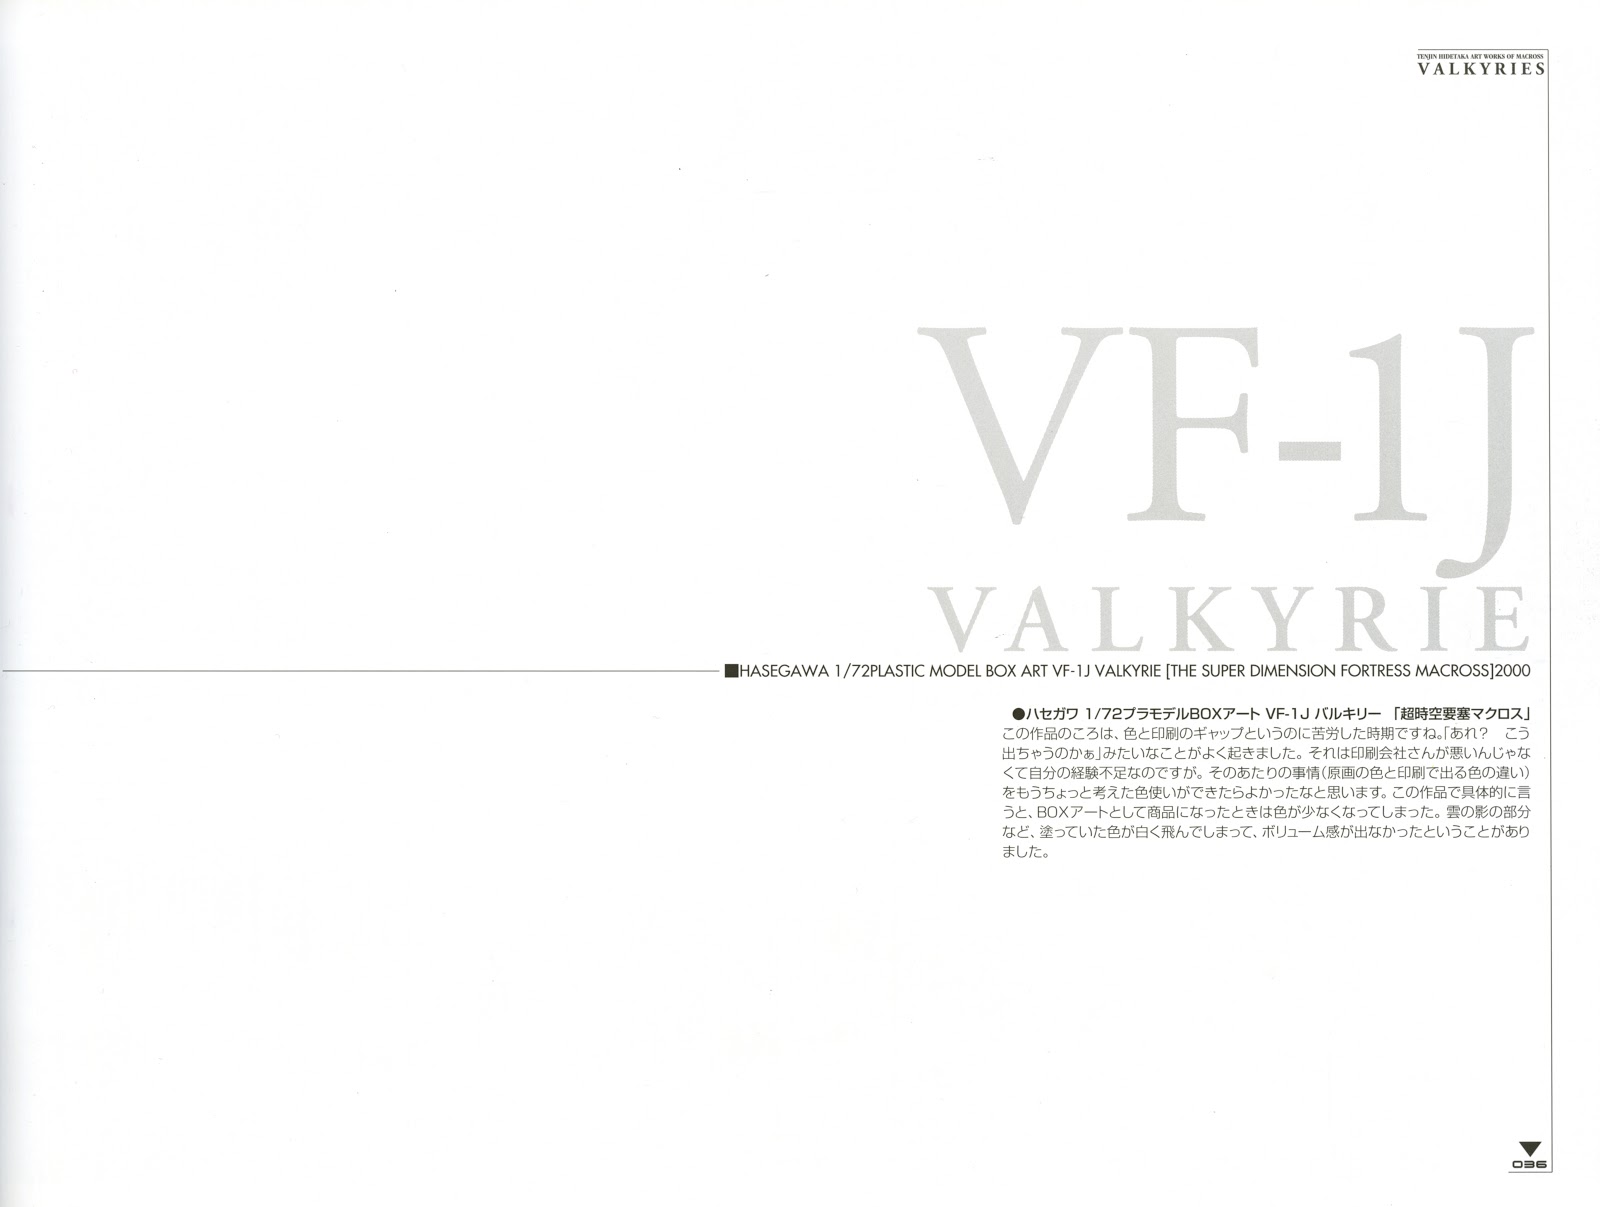 Valkyries - Art Works of Macross - Tenjin Hidetaka 